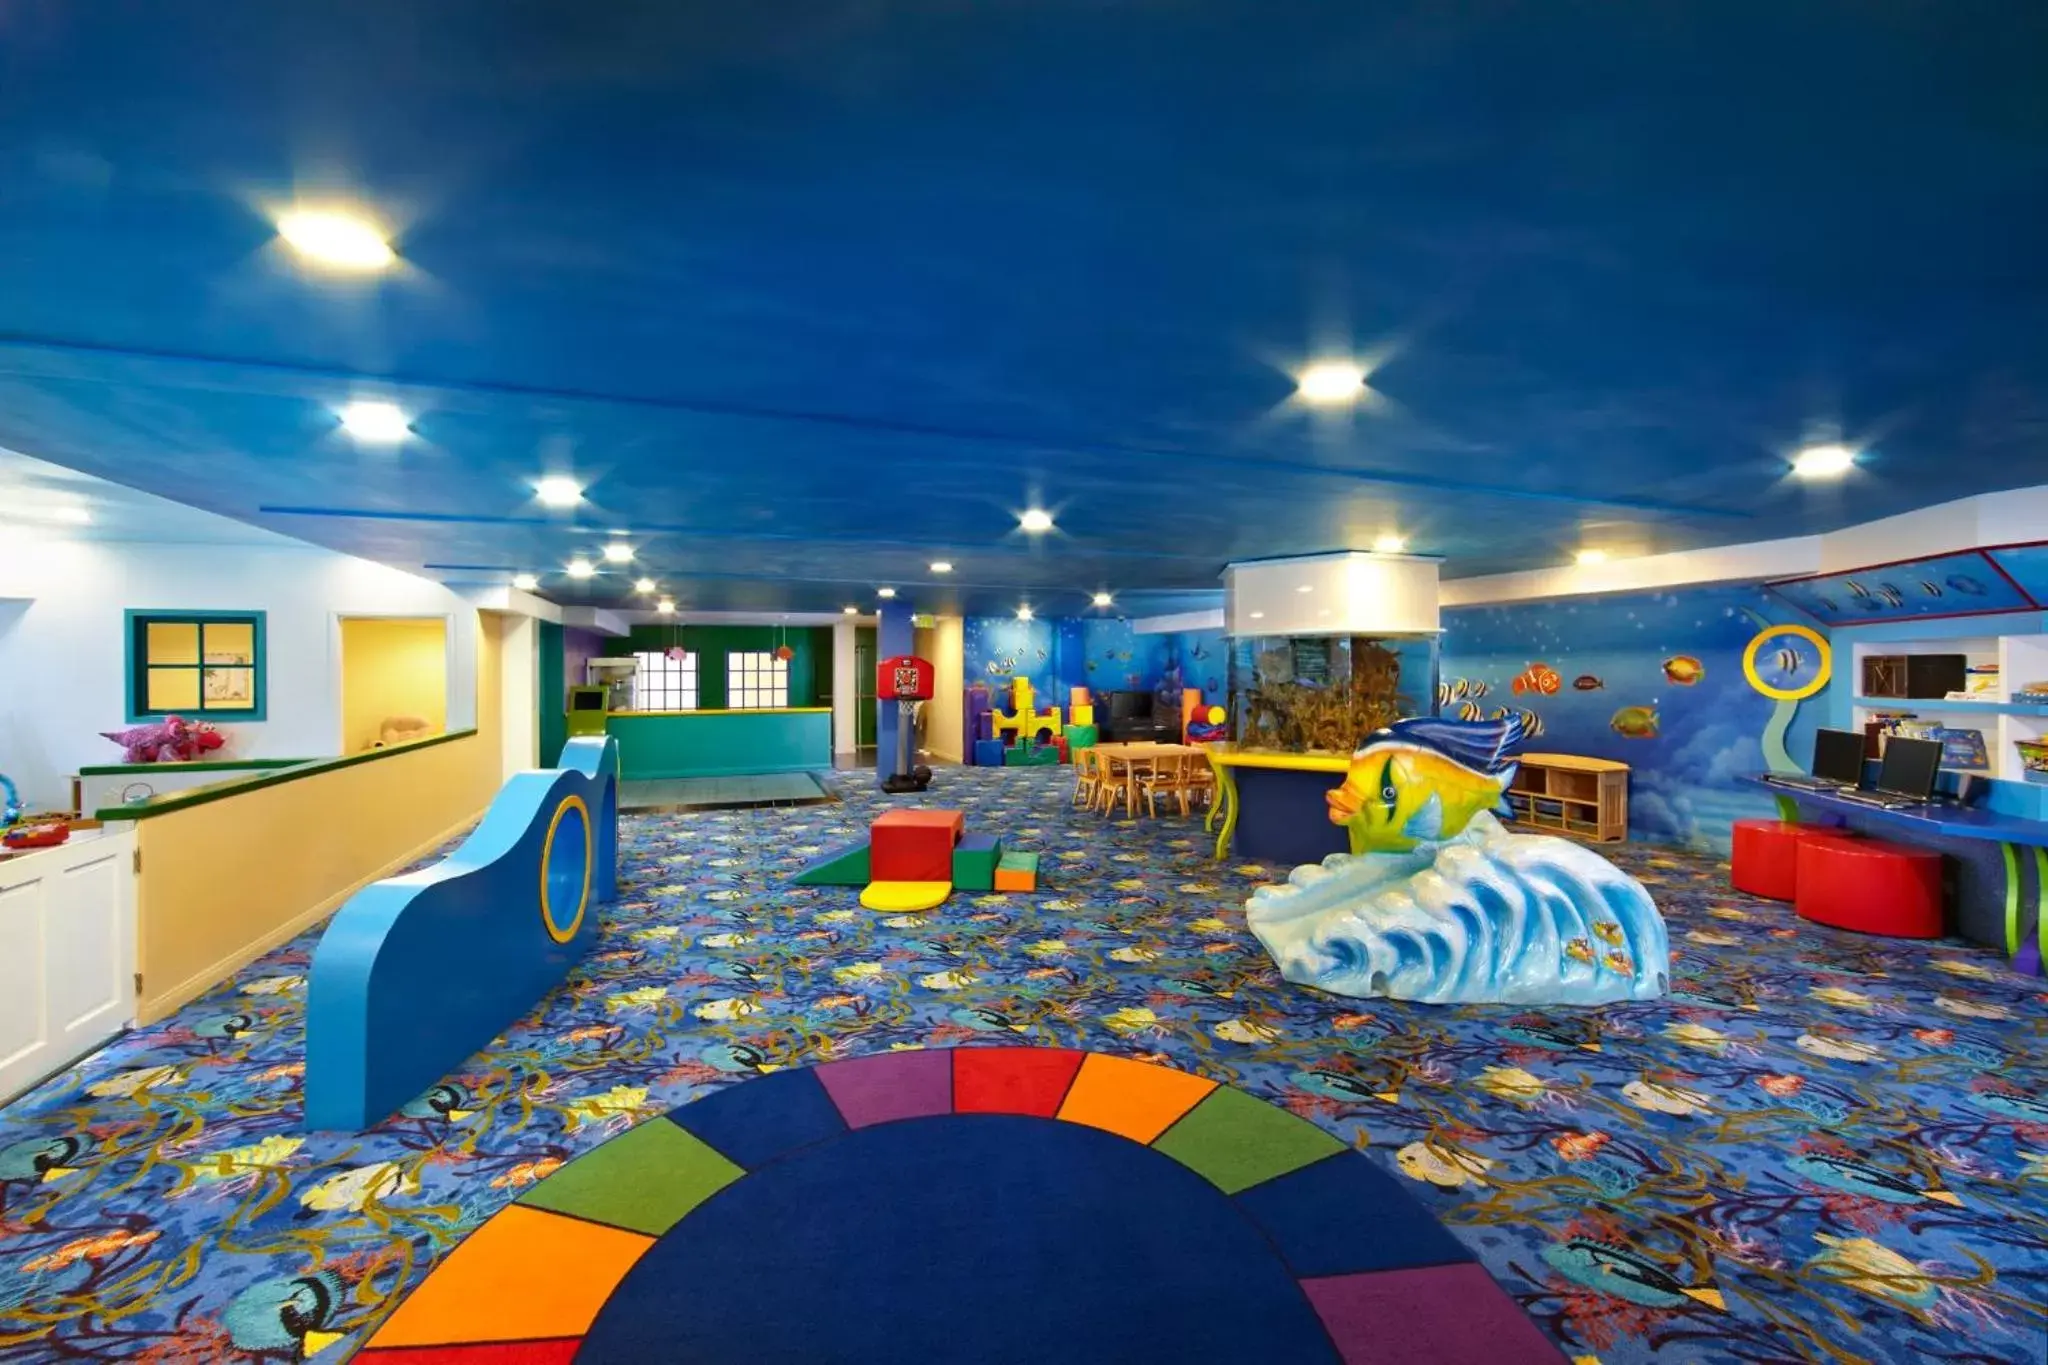 Fitness centre/facilities in Omni La Costa Resort & Spa Carlsbad